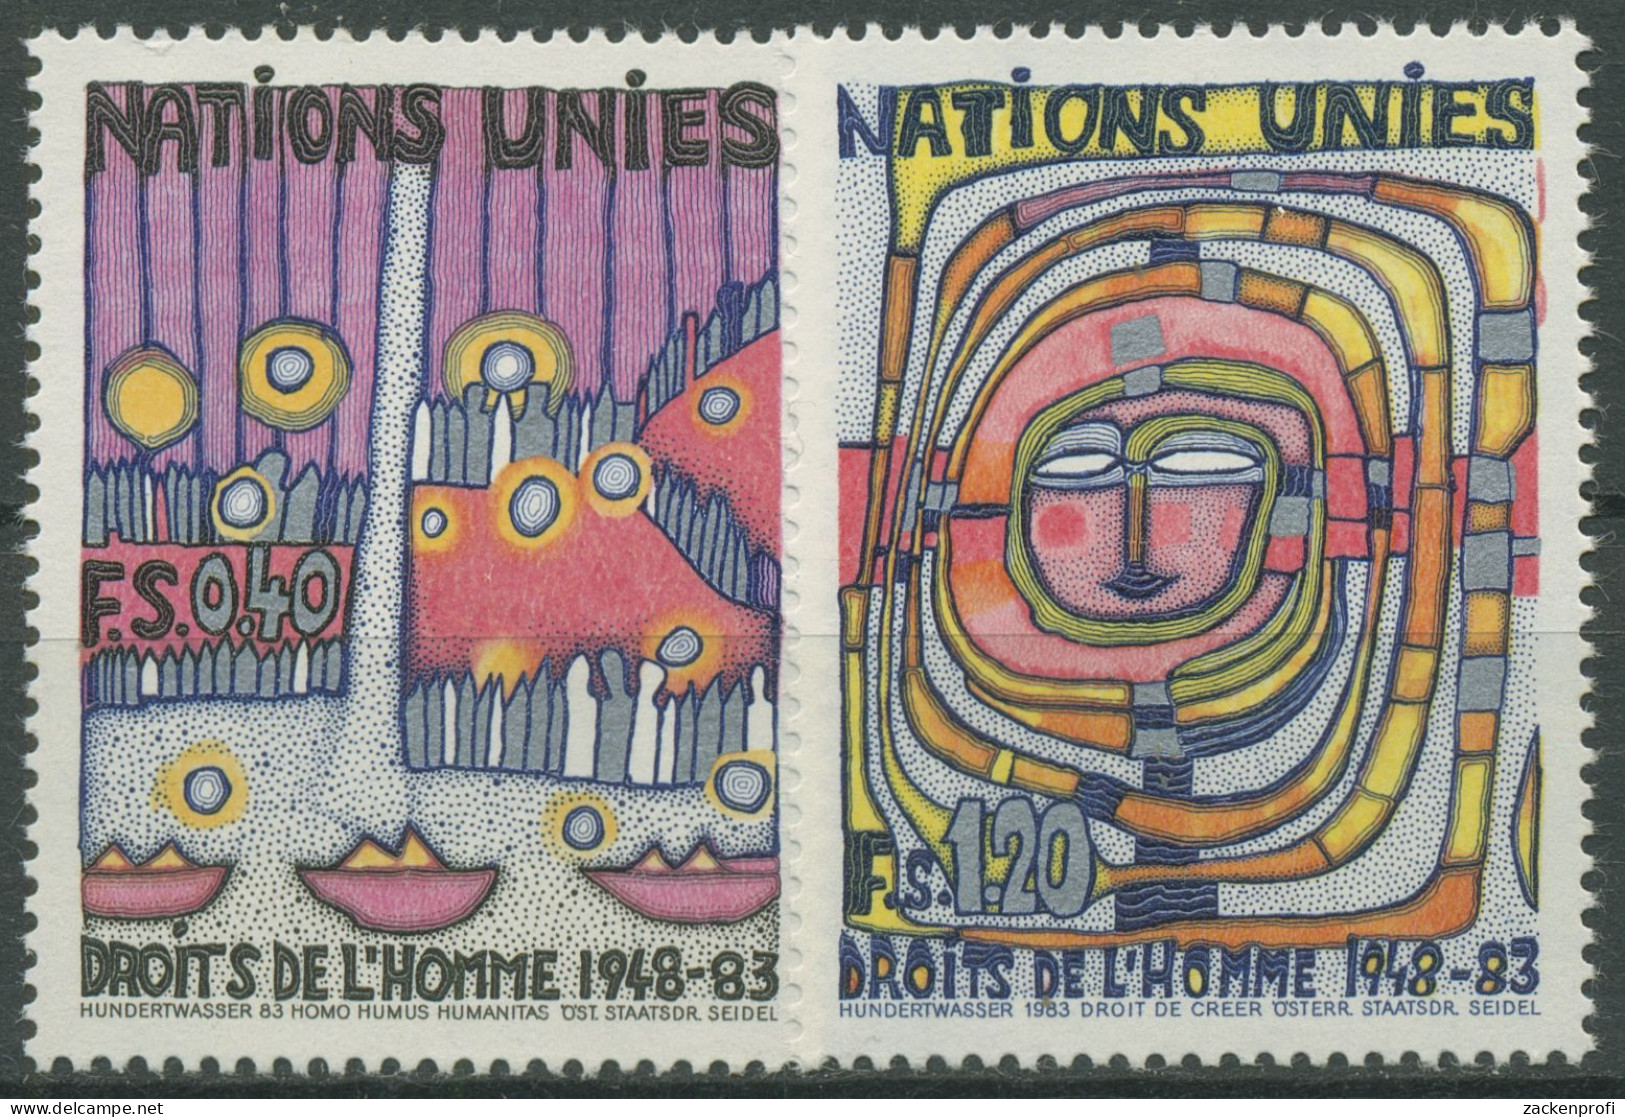 UNO Genf 1983 Erklärung Der Menschrechte Gemälde Hundertwasser 117/18 Postfrisch - Unused Stamps